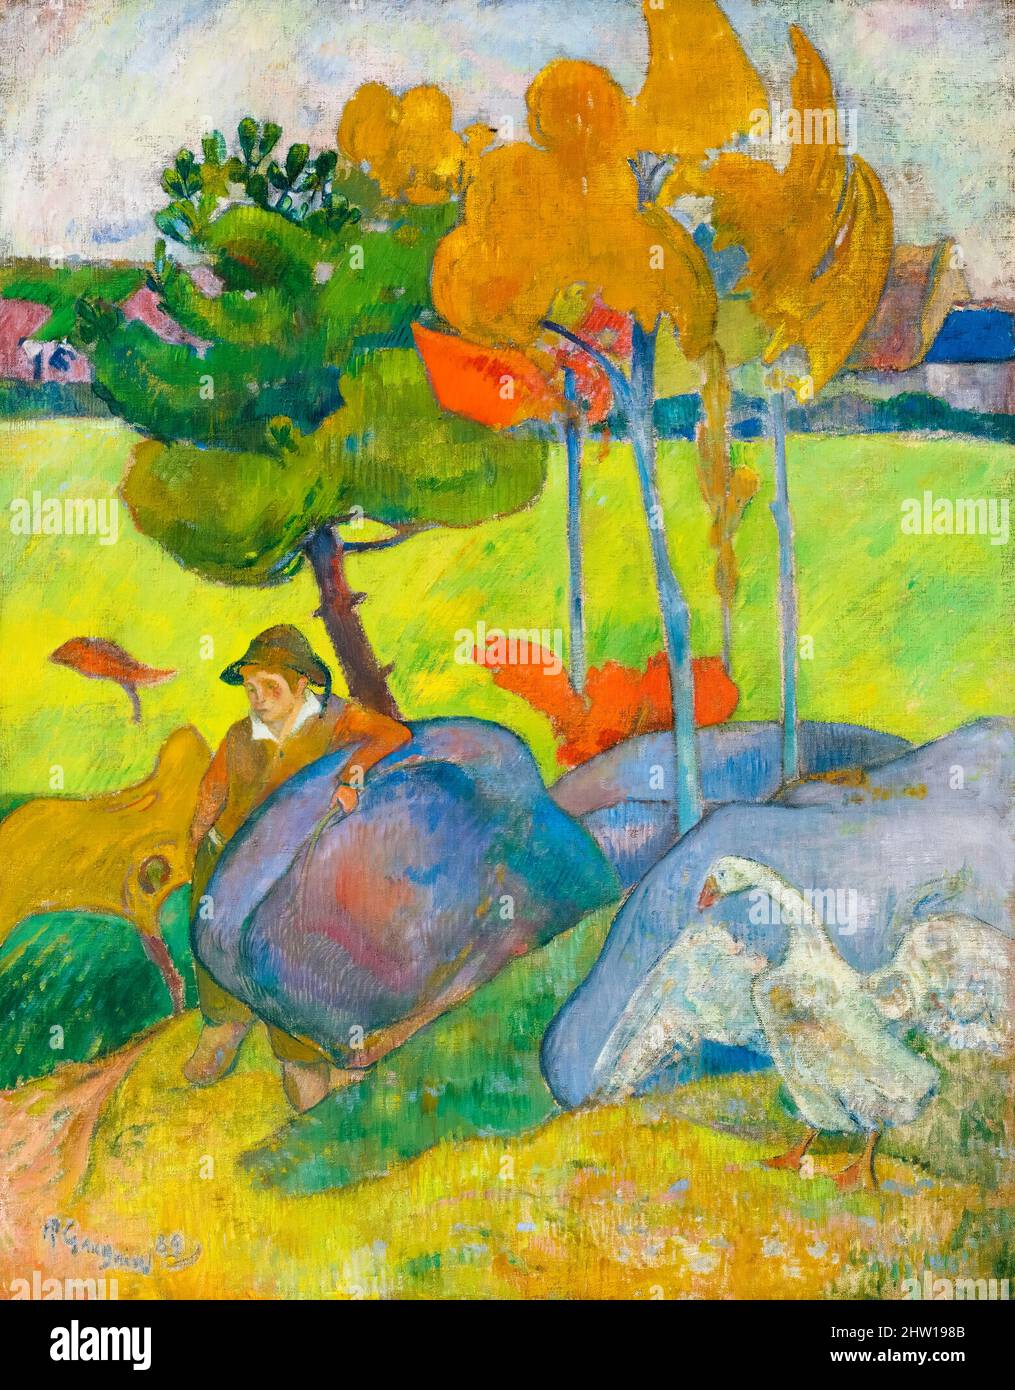 Paul Gauguin, Petit Breton à l'oie (piccolo bretone con oca), pittura in olio su tela, 1889 Foto Stock